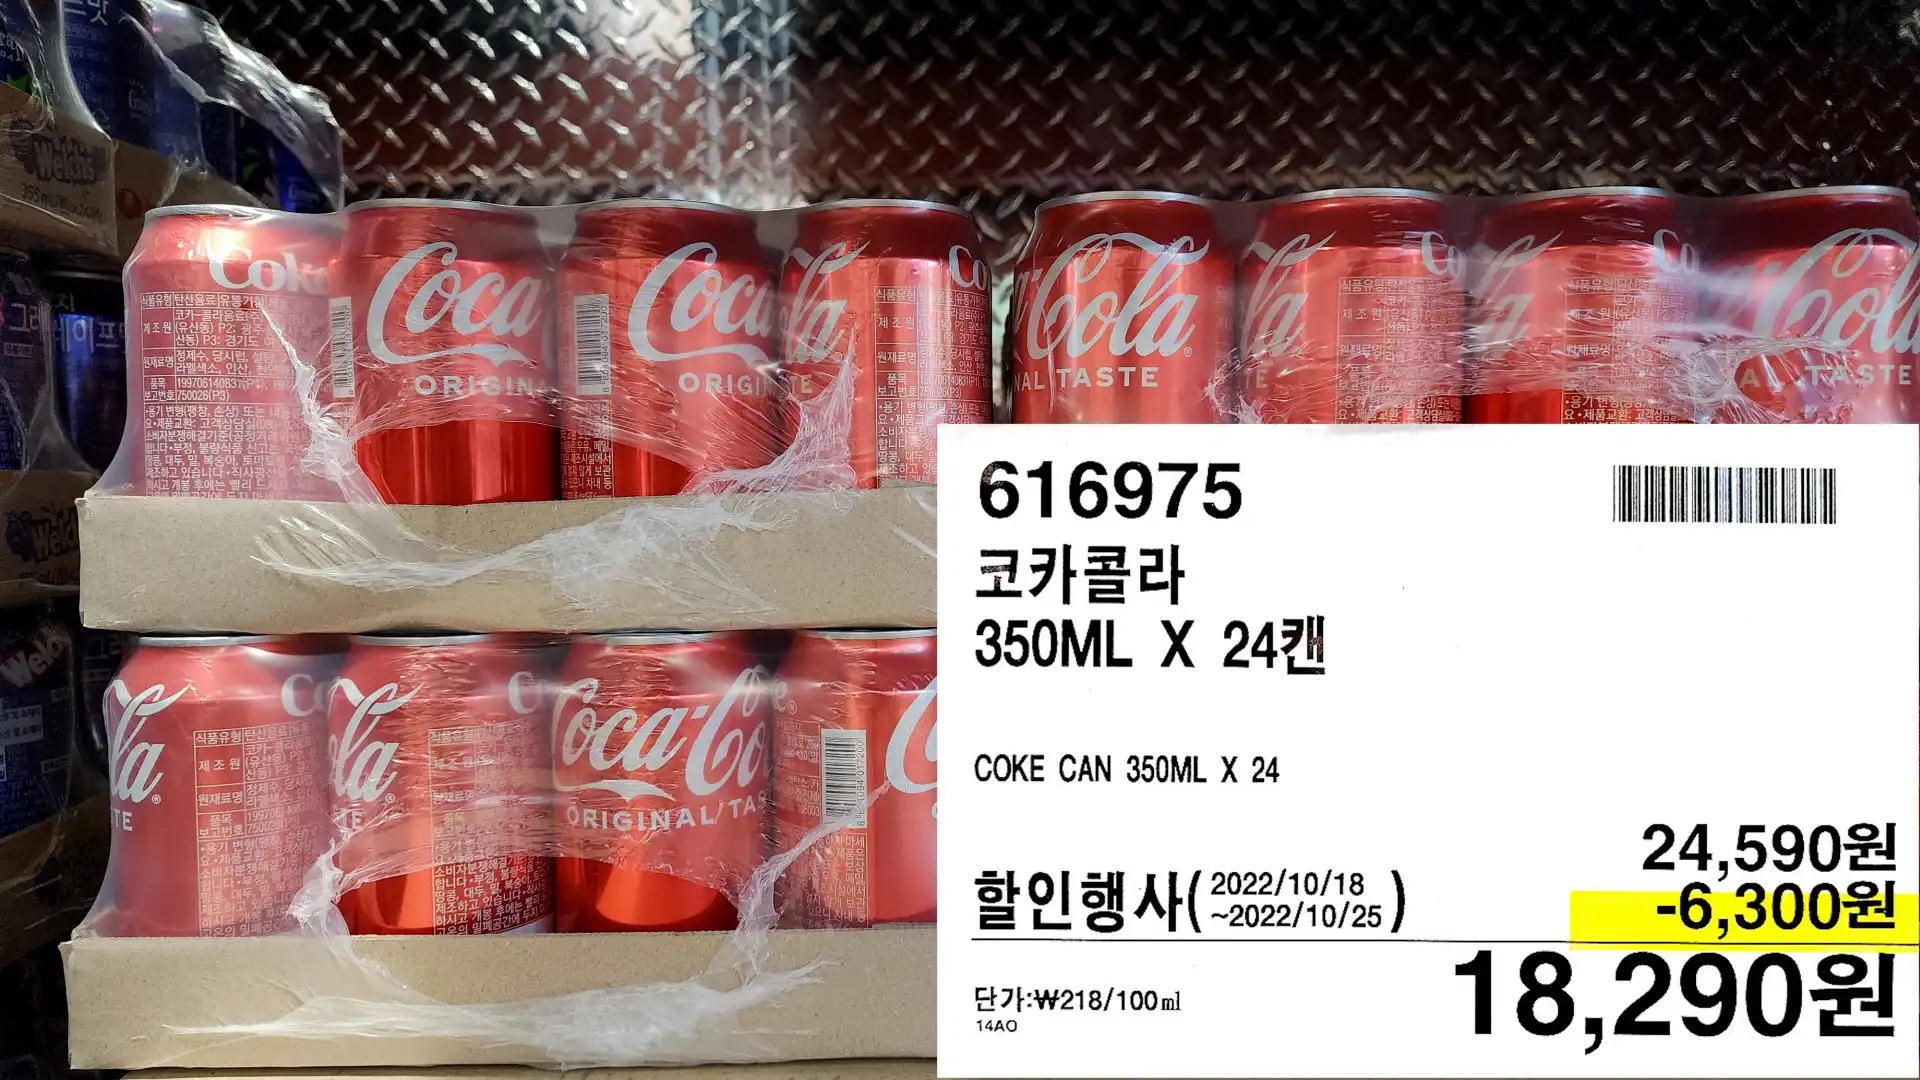 코카콜라
350ML X 24캔
COKE CAN 350ML X 24
18&#44;290